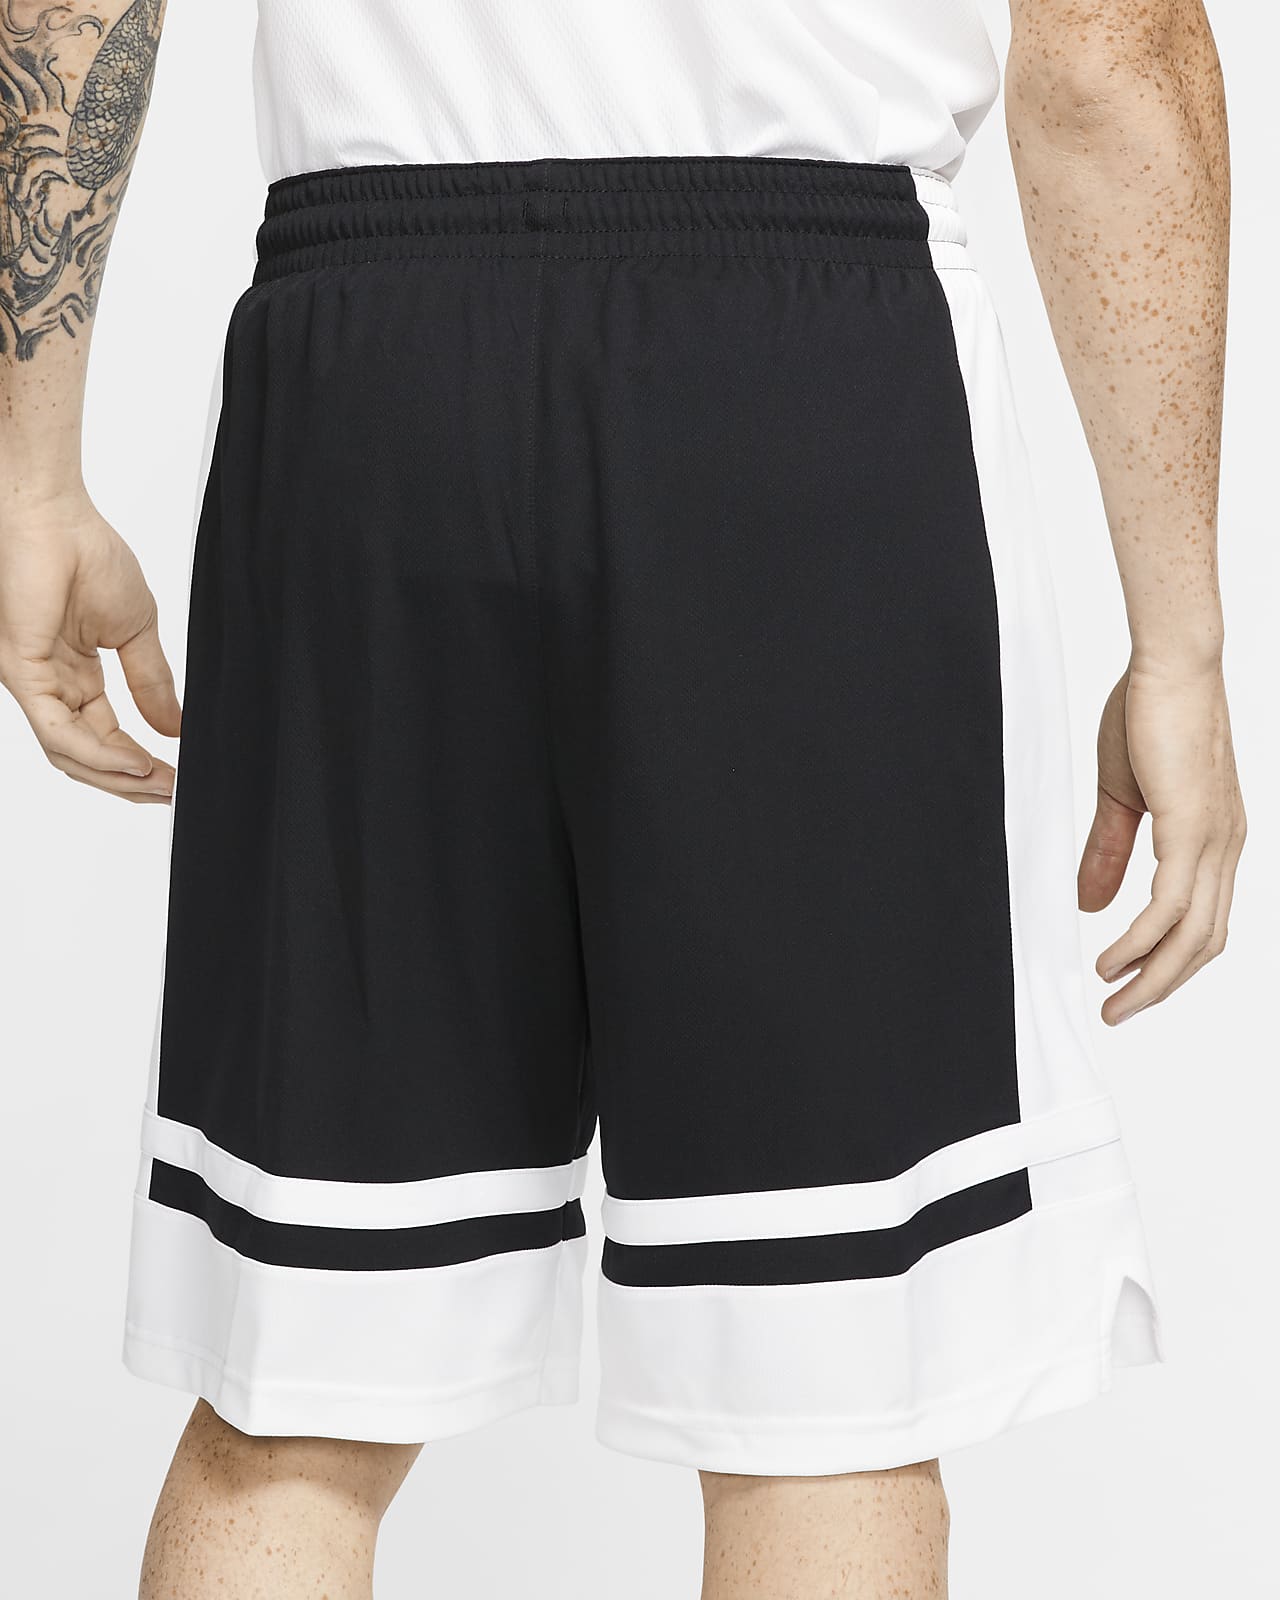 men's elite basketball shorts